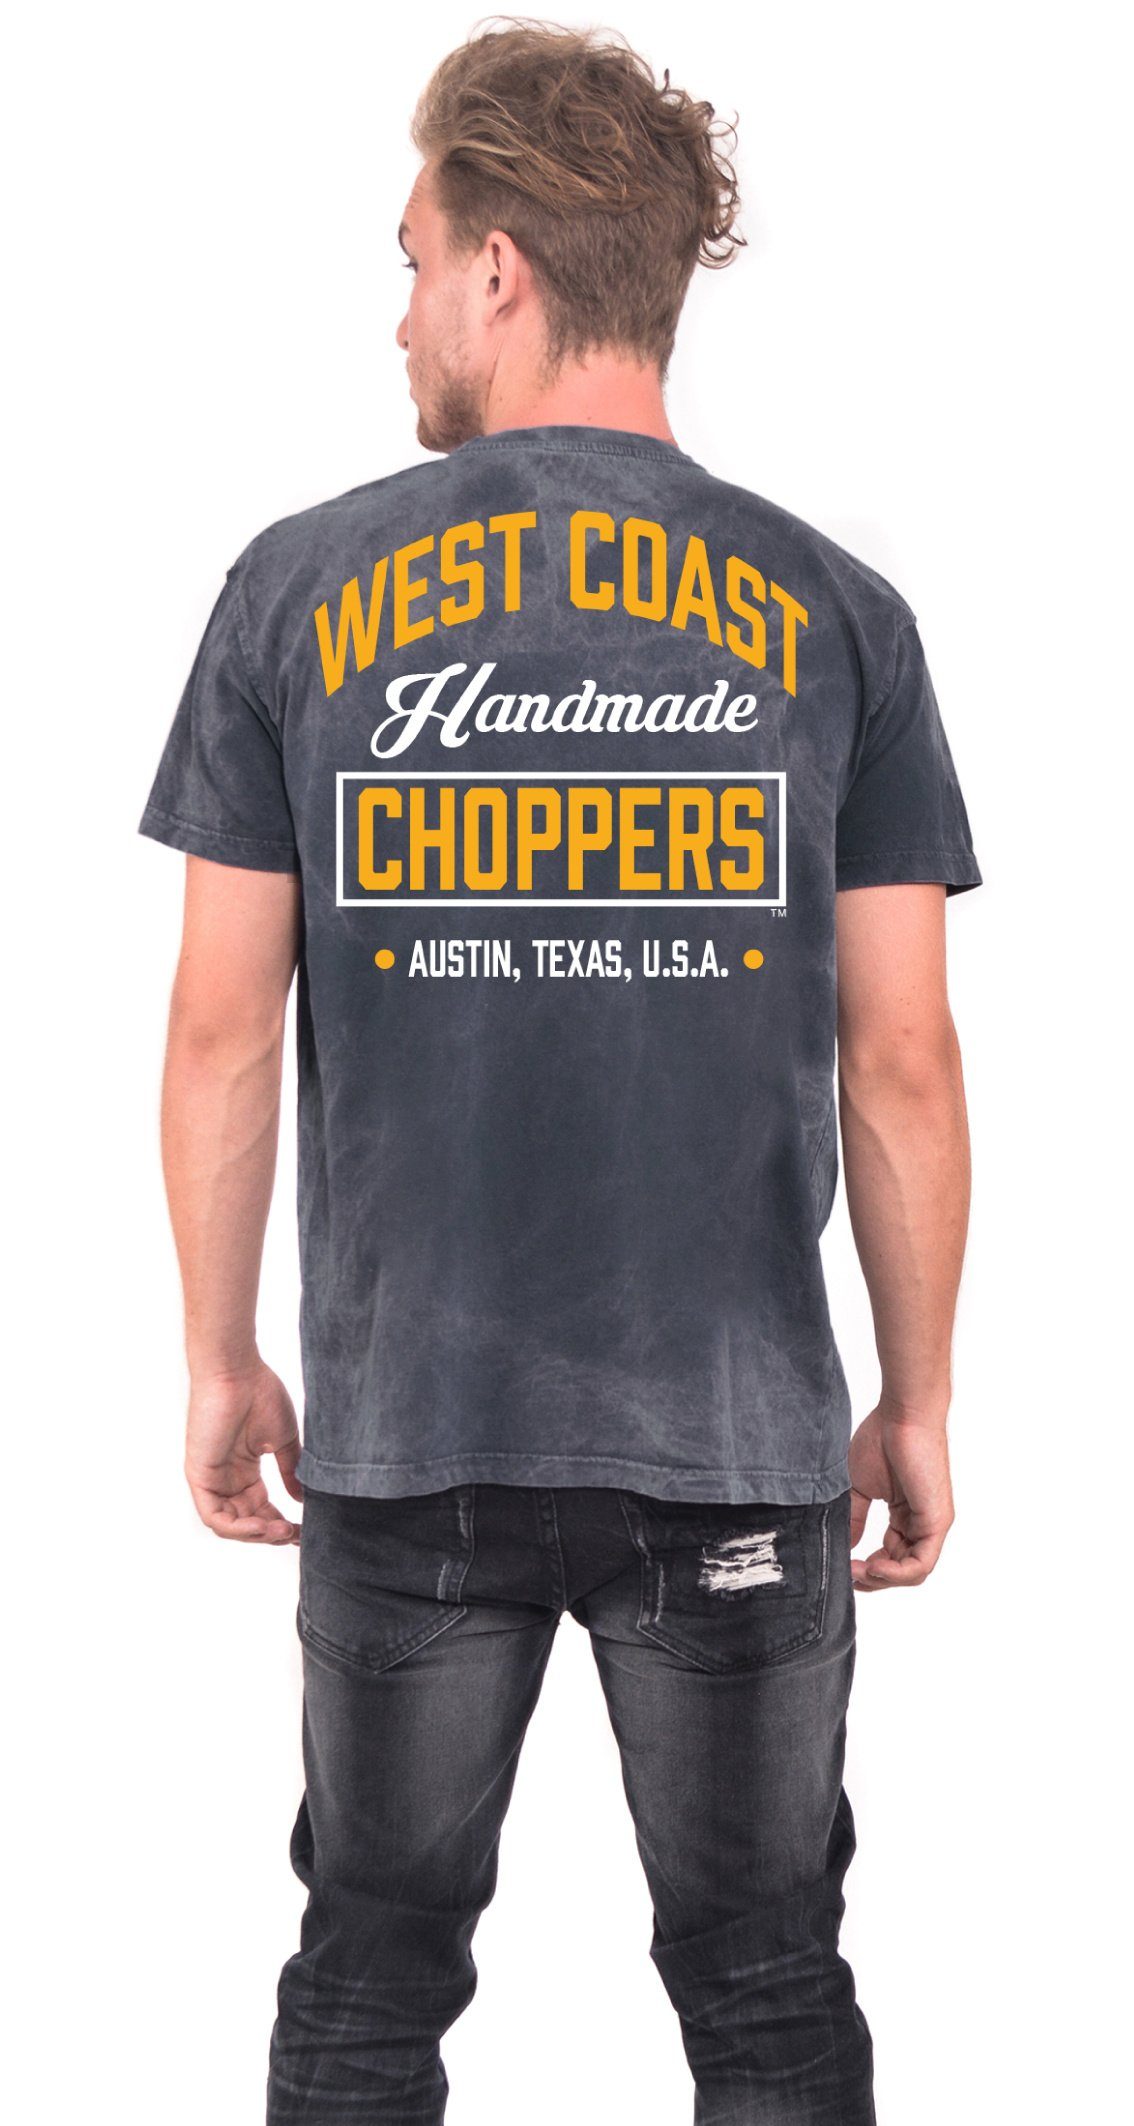 Coast Choppers West T-Shirt Handmade Choppers Adult Herren T-Shirt West Coast